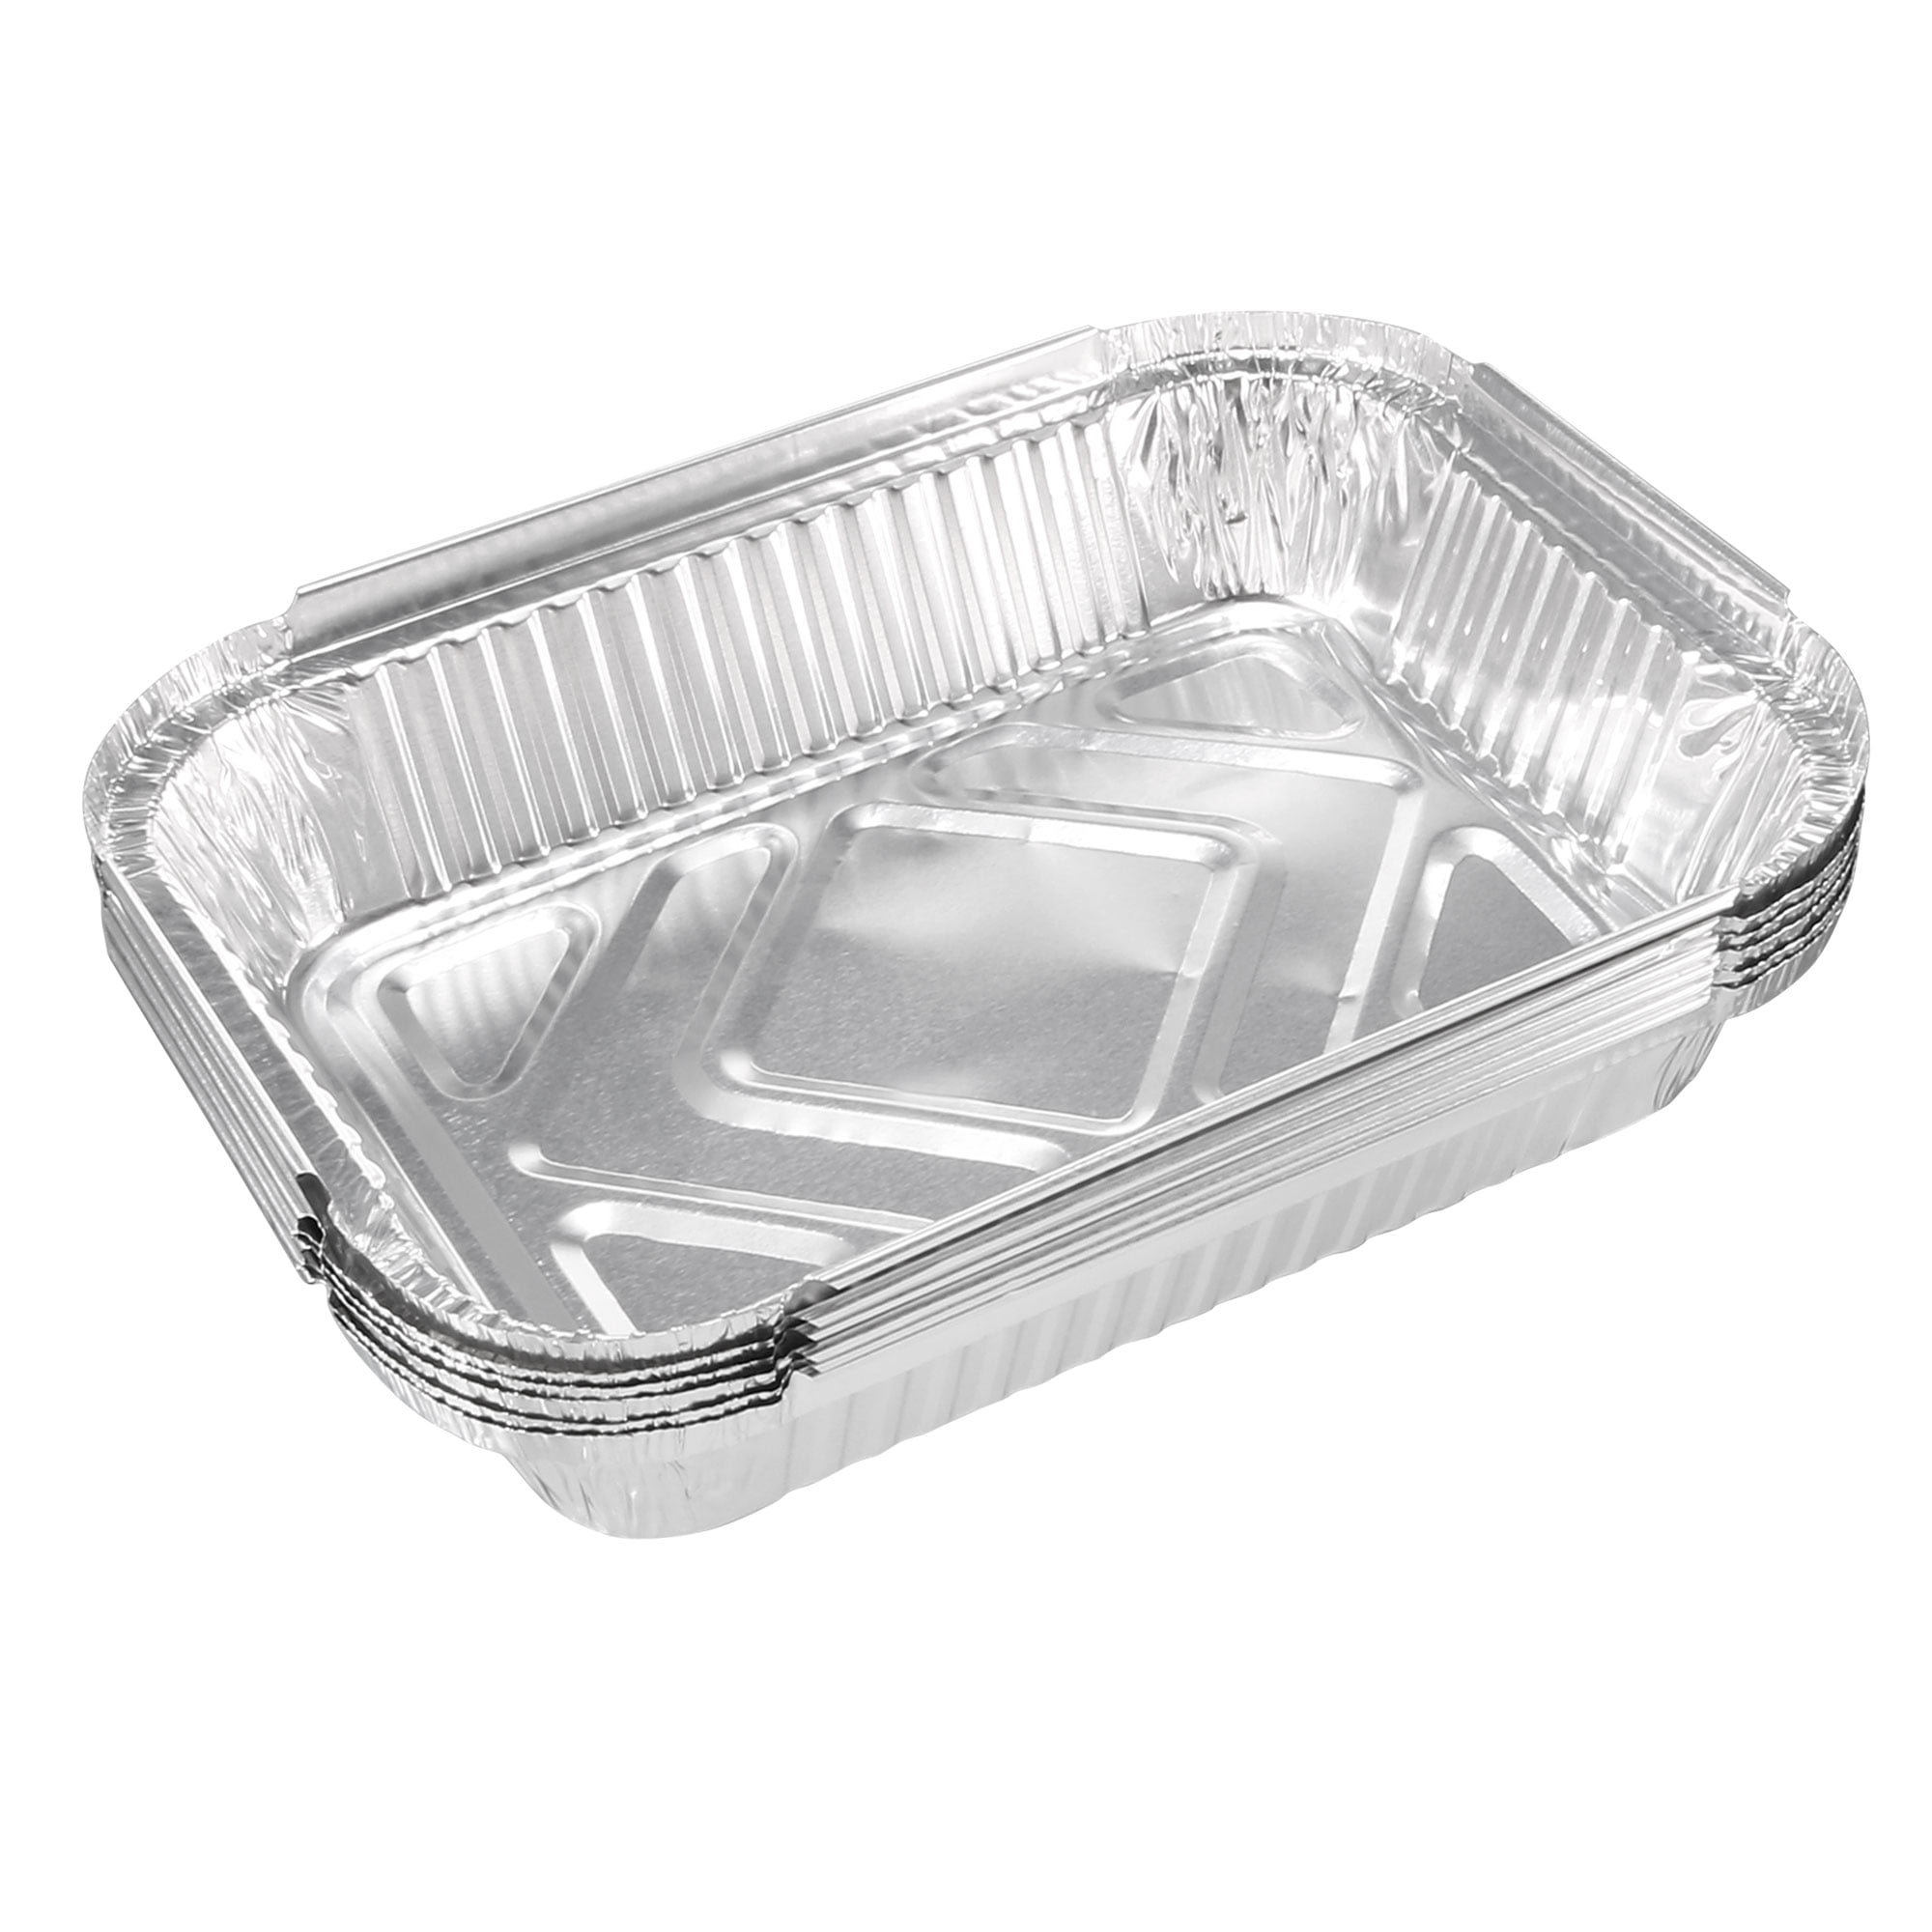 Disposable Aluminum Foil Pans - WebstaurantStore